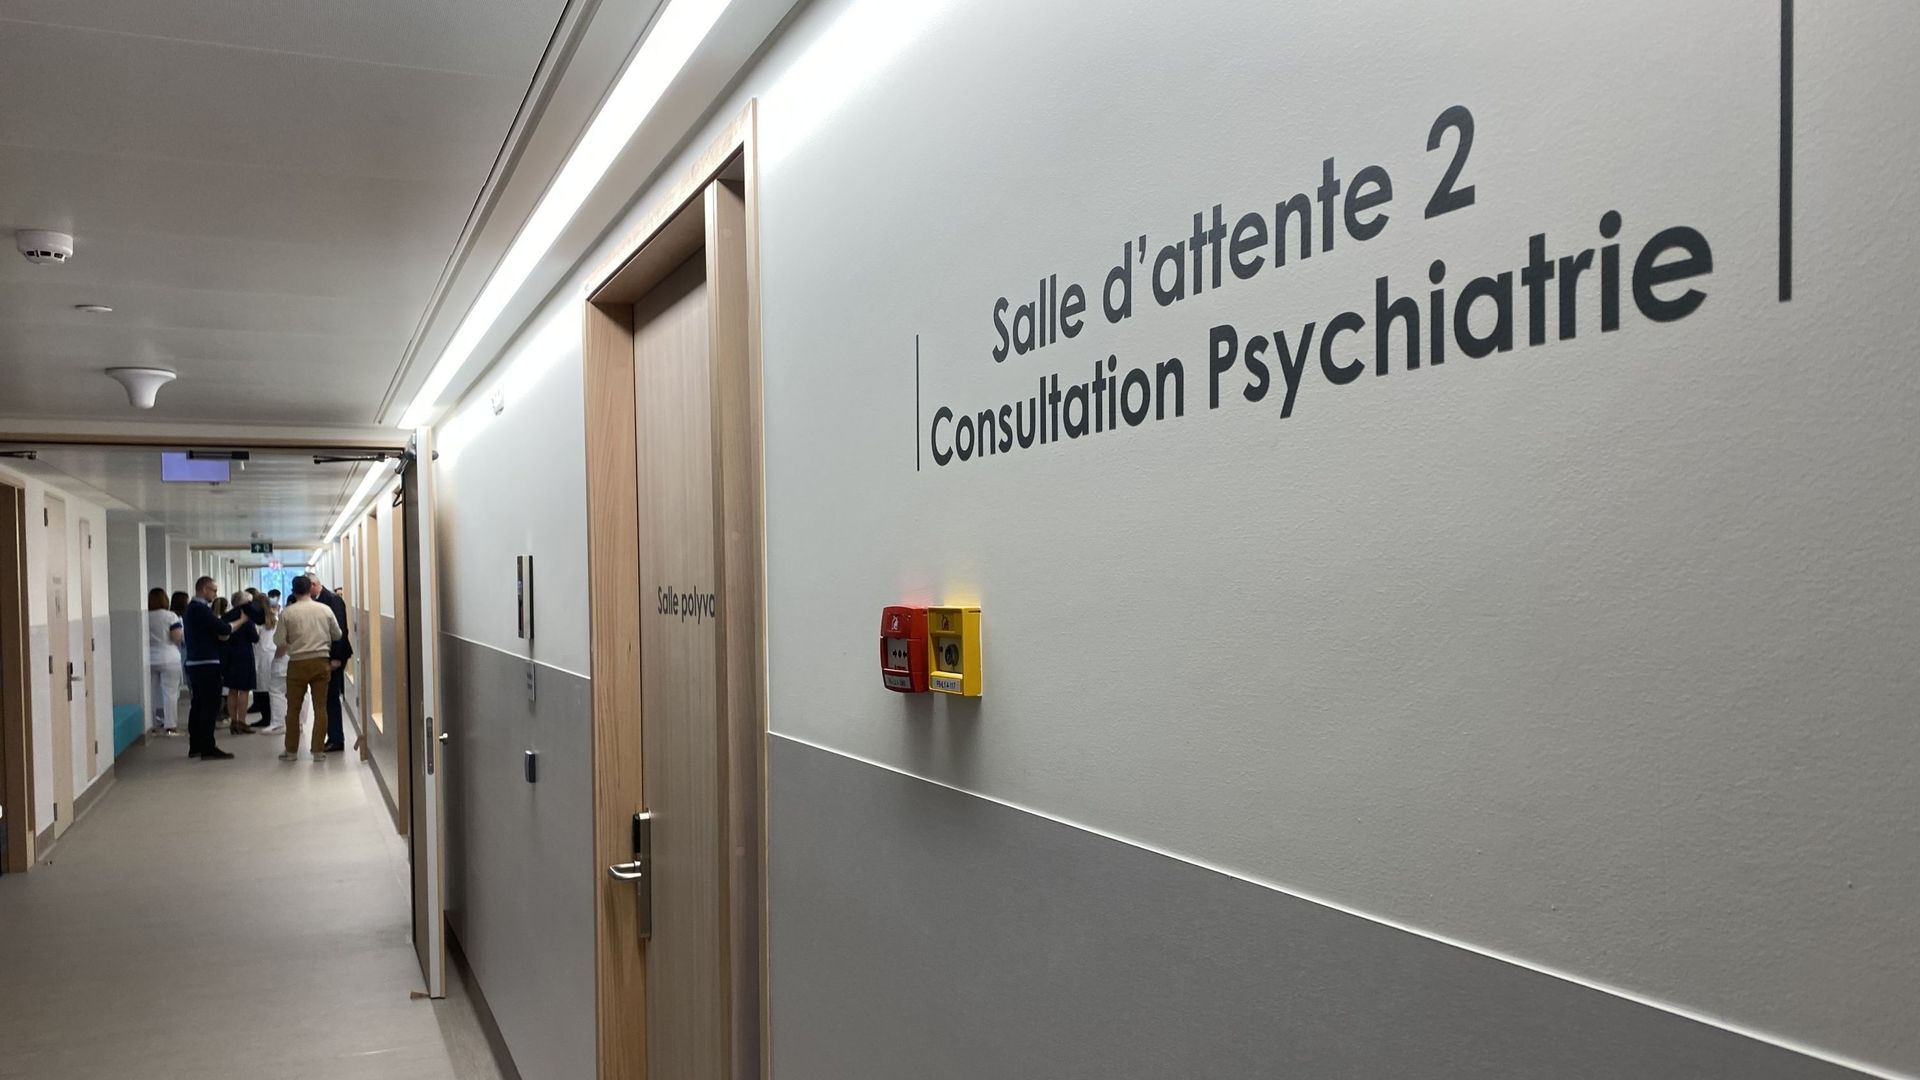 Le nouveau service de psychiatrie compte 30 lits et des espaces plus adaptés aux approches thérapeutiques actuelles.